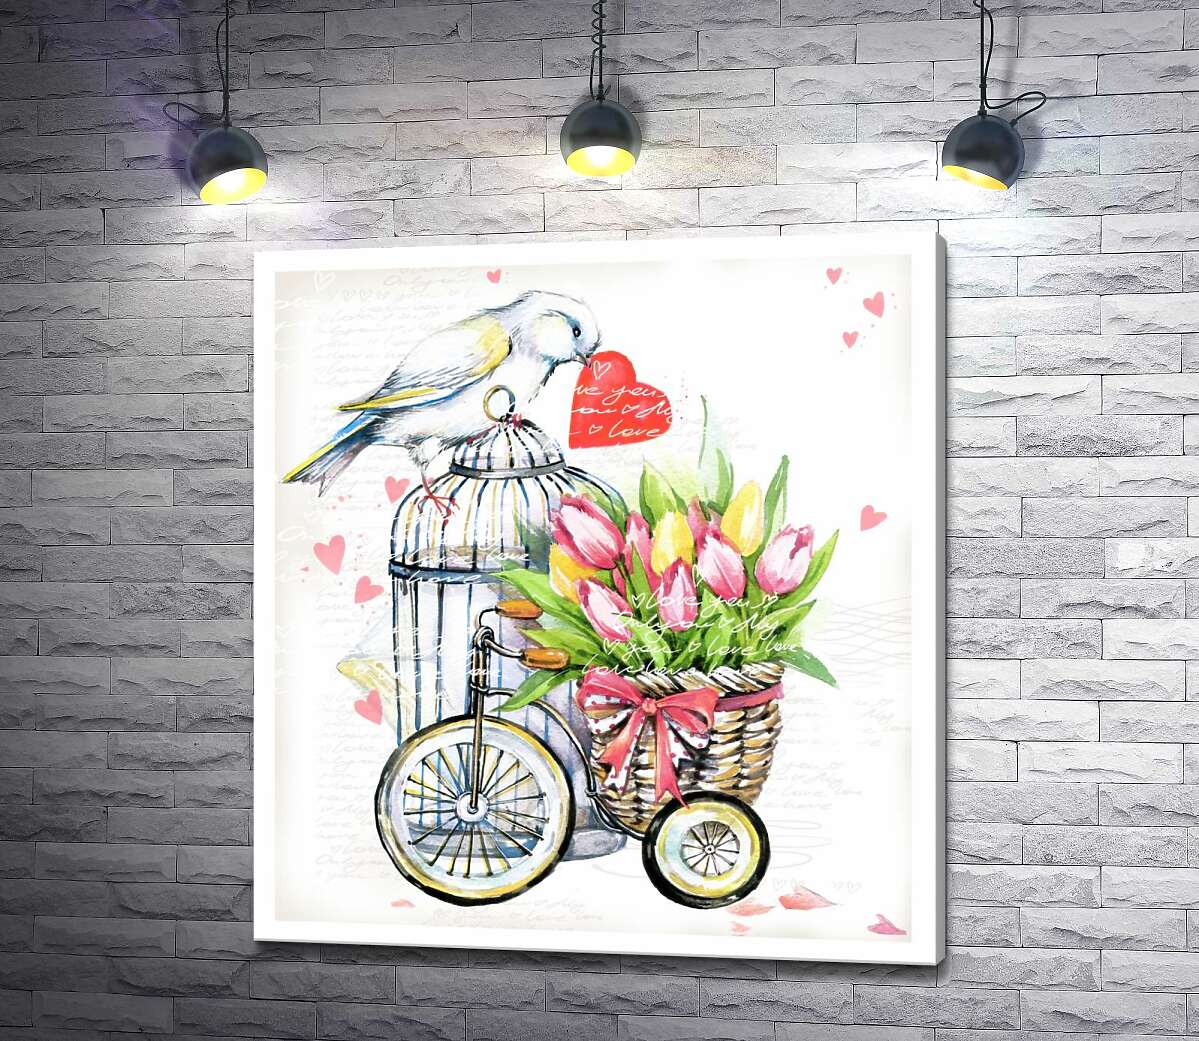 картина Белая птица держит сердце в клюве рядом с корзиной весенних тюльпанов на велосипеде